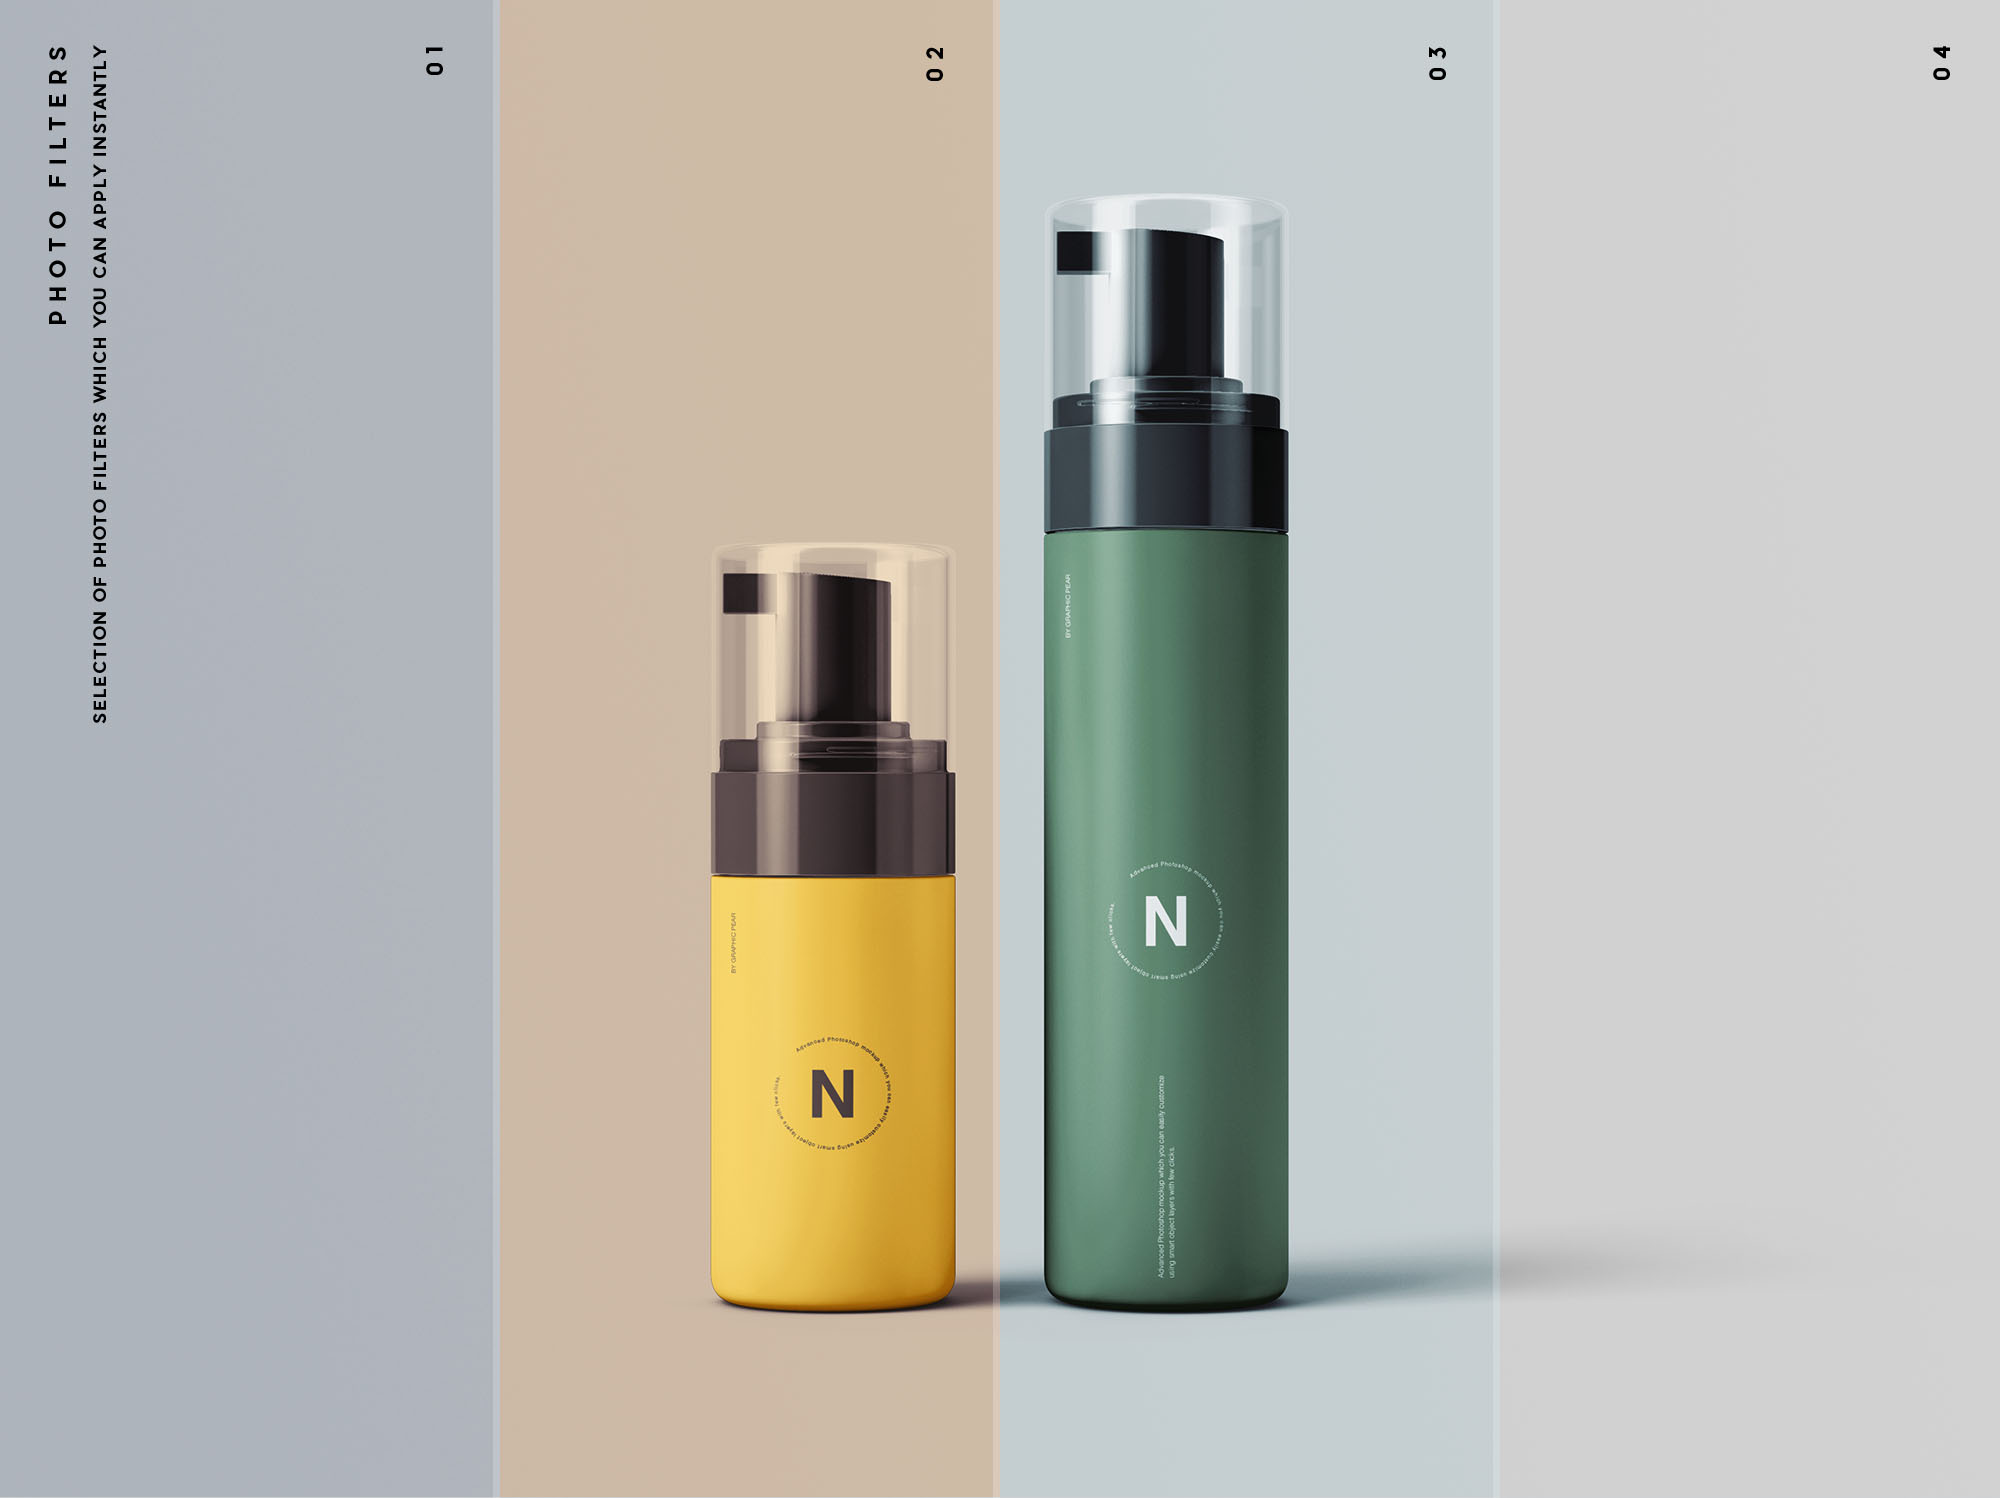 按压式化妆品护肤品瓶外观设计第一素材精选模板 Cosmetic Bottles Packaging Mockup插图(10)